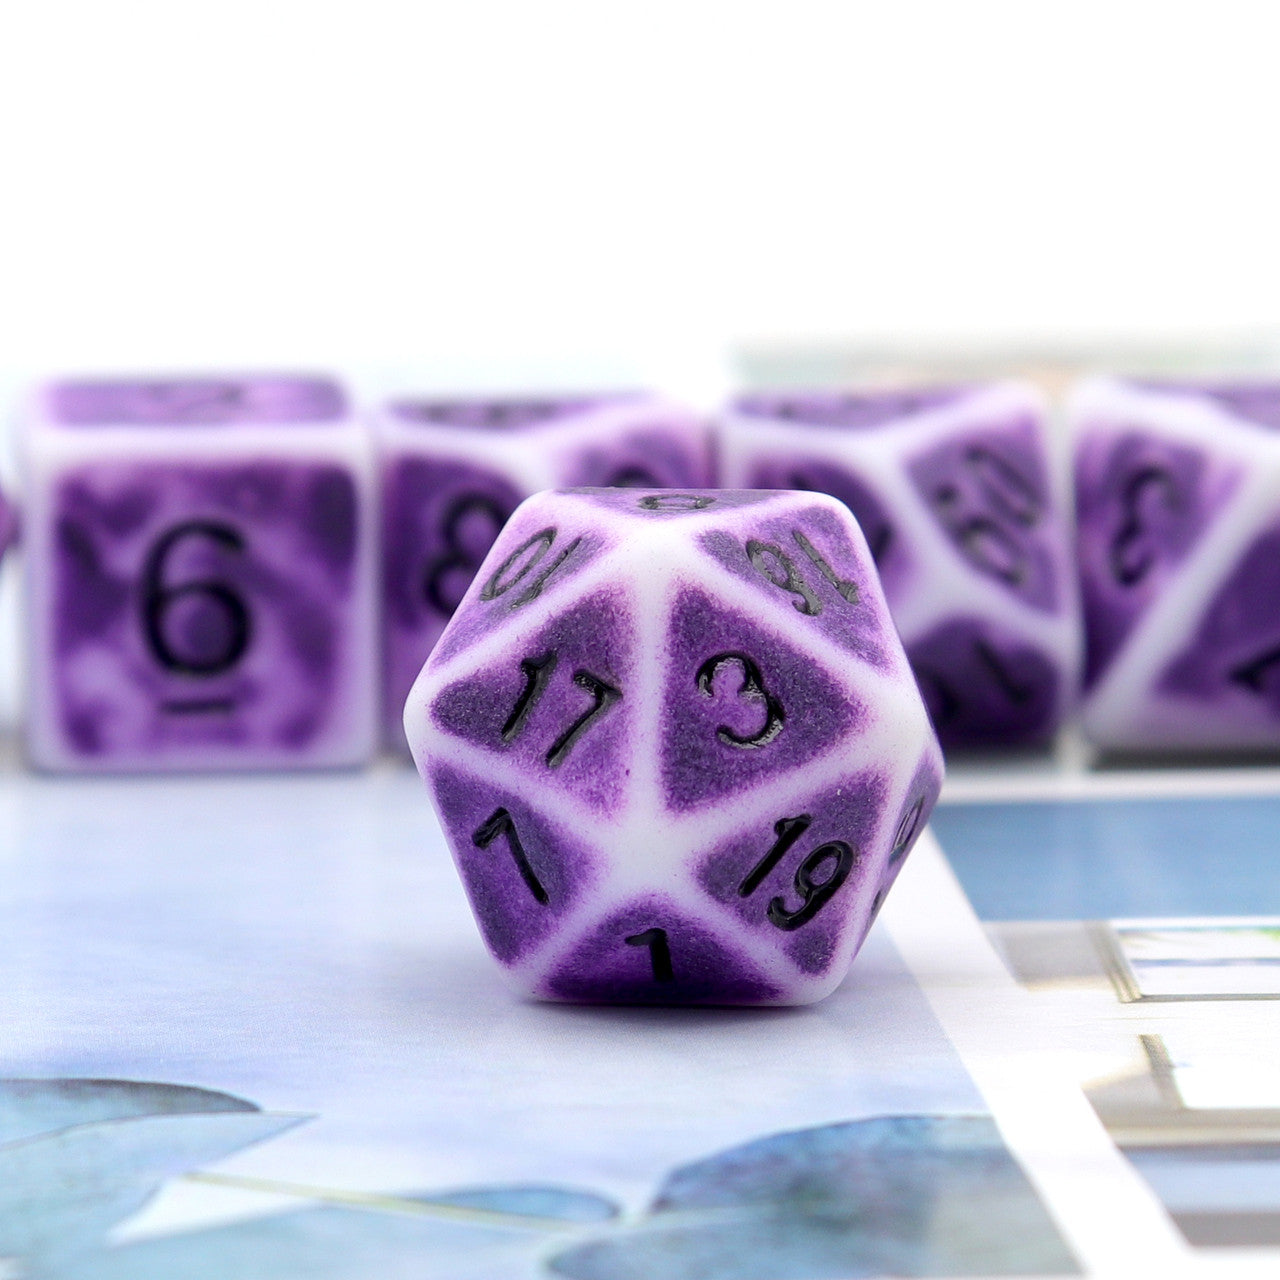 antique dice, ancient dice, purple dice, rpg dice, bone dice, polyhedral dice, dice set, dnd dice